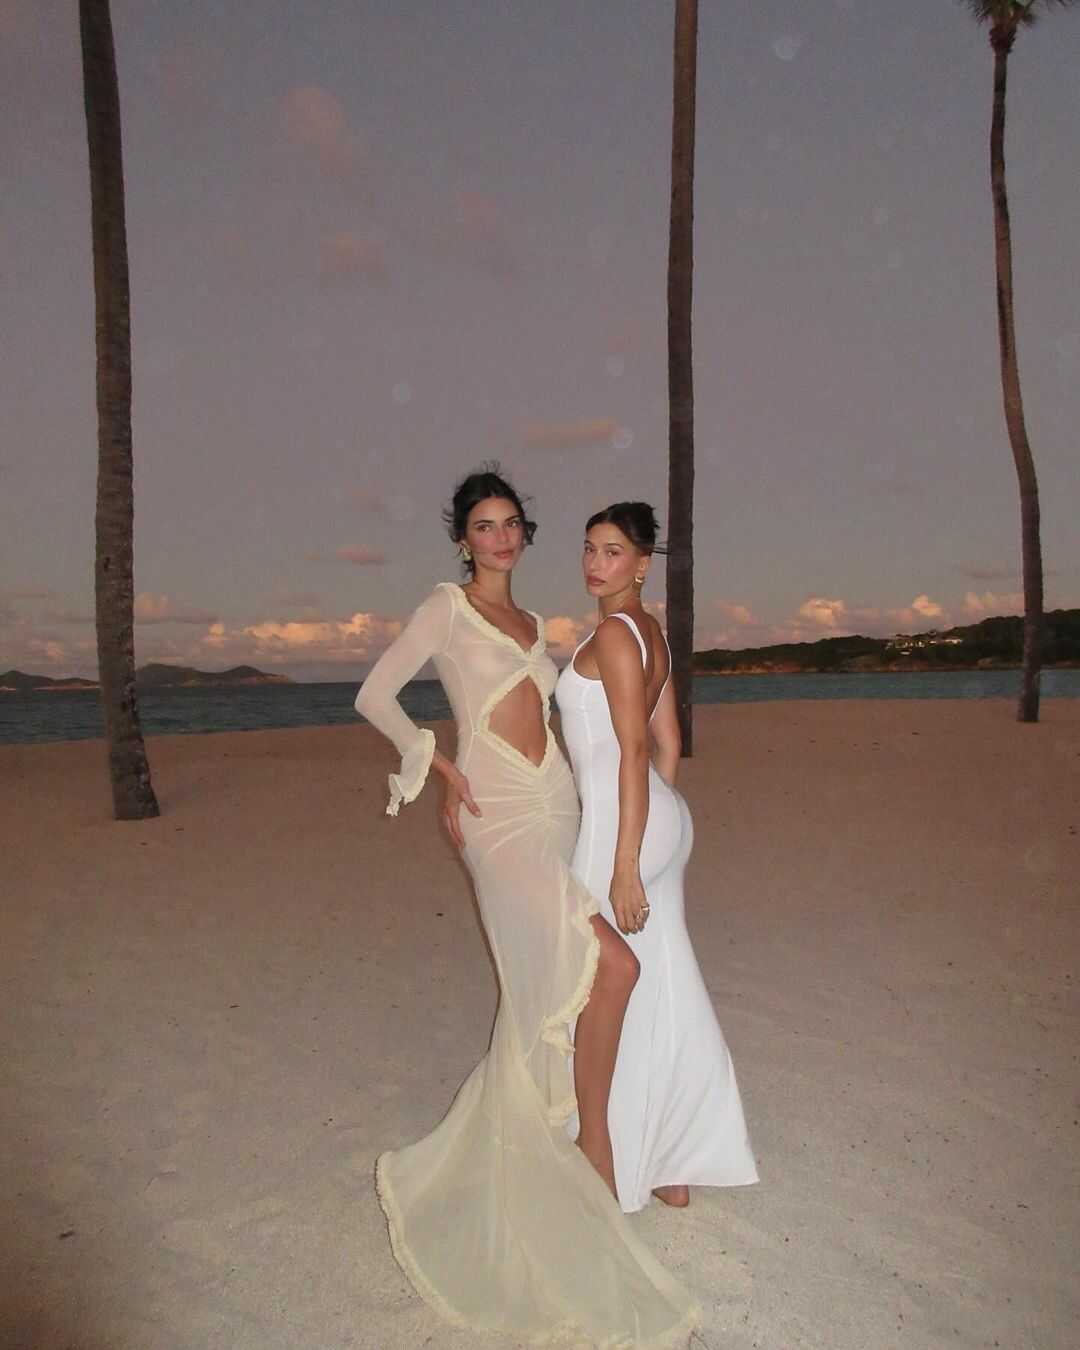 Η μουνάρα Kendall Jenner με see through φόρεμα